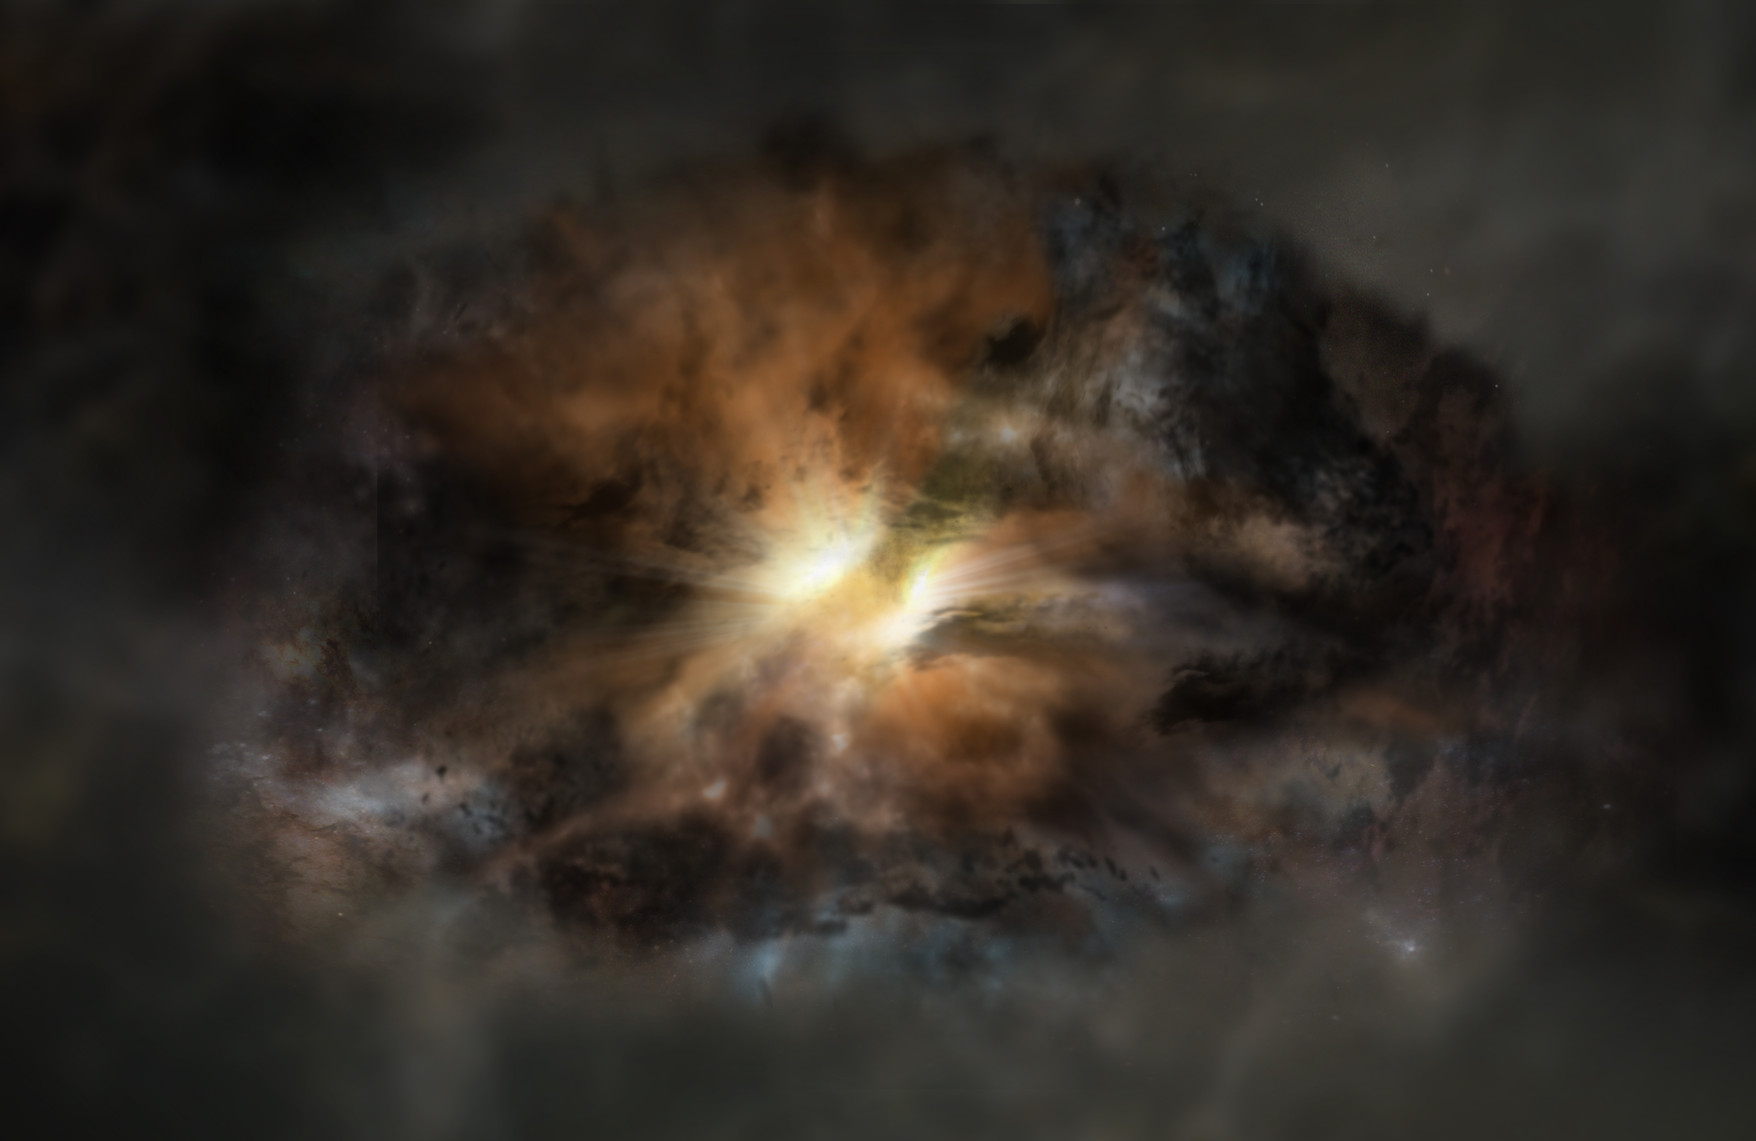 RepresentaciÃ³n artÃ­stica de W2246-0526, una galaxia cuyo brillo infrarrojo es equivalente al de unos 350 billones de soles. CrÃ©dito: NRAO/AUI/NSF; Dana Berry / SkyWorks; ALMA (ESO/NAOJ/NRAO)